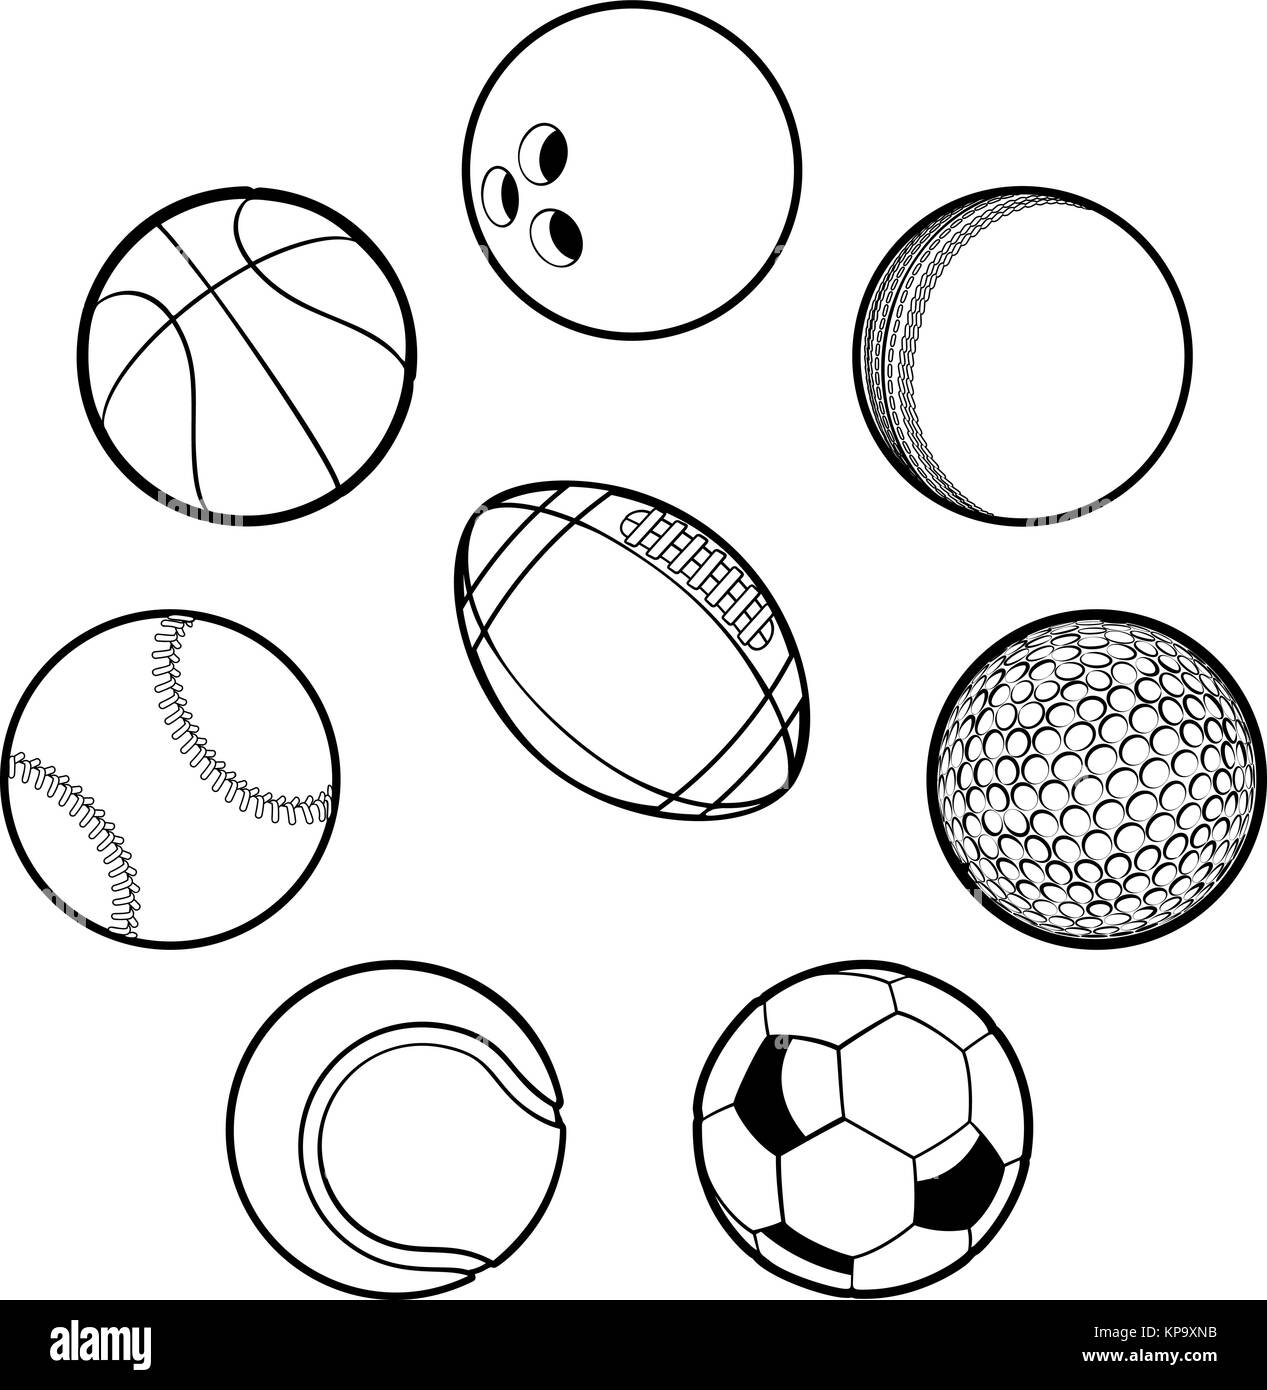 Геометрический рисунок спорт мячи